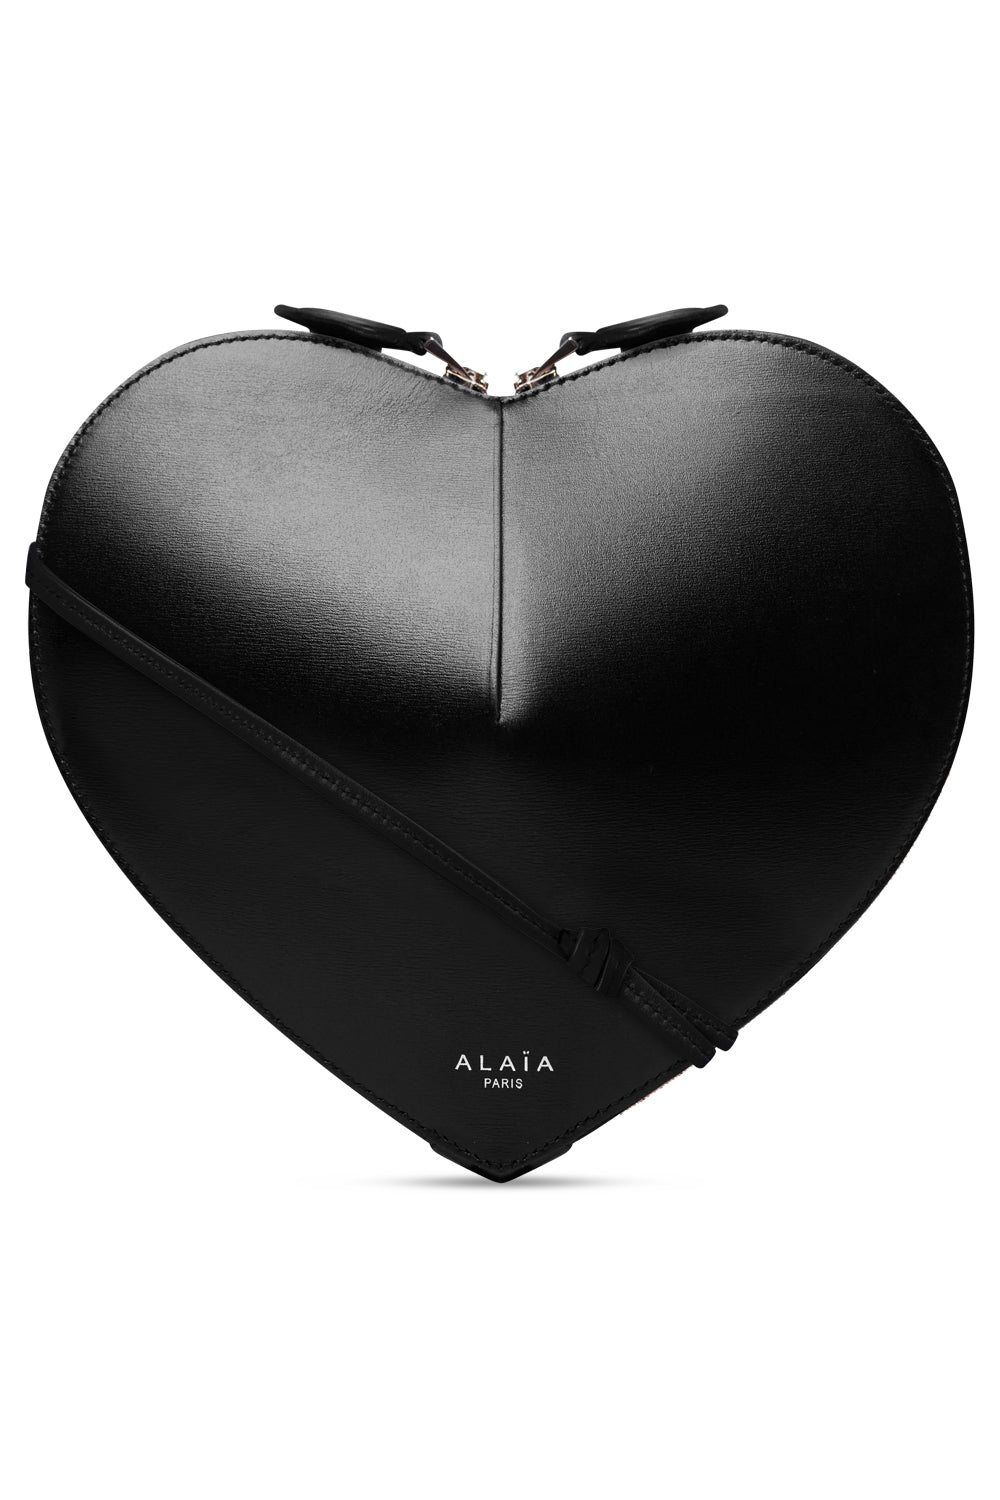 ALAÏA Le Cœur - Heart Shaped Bags